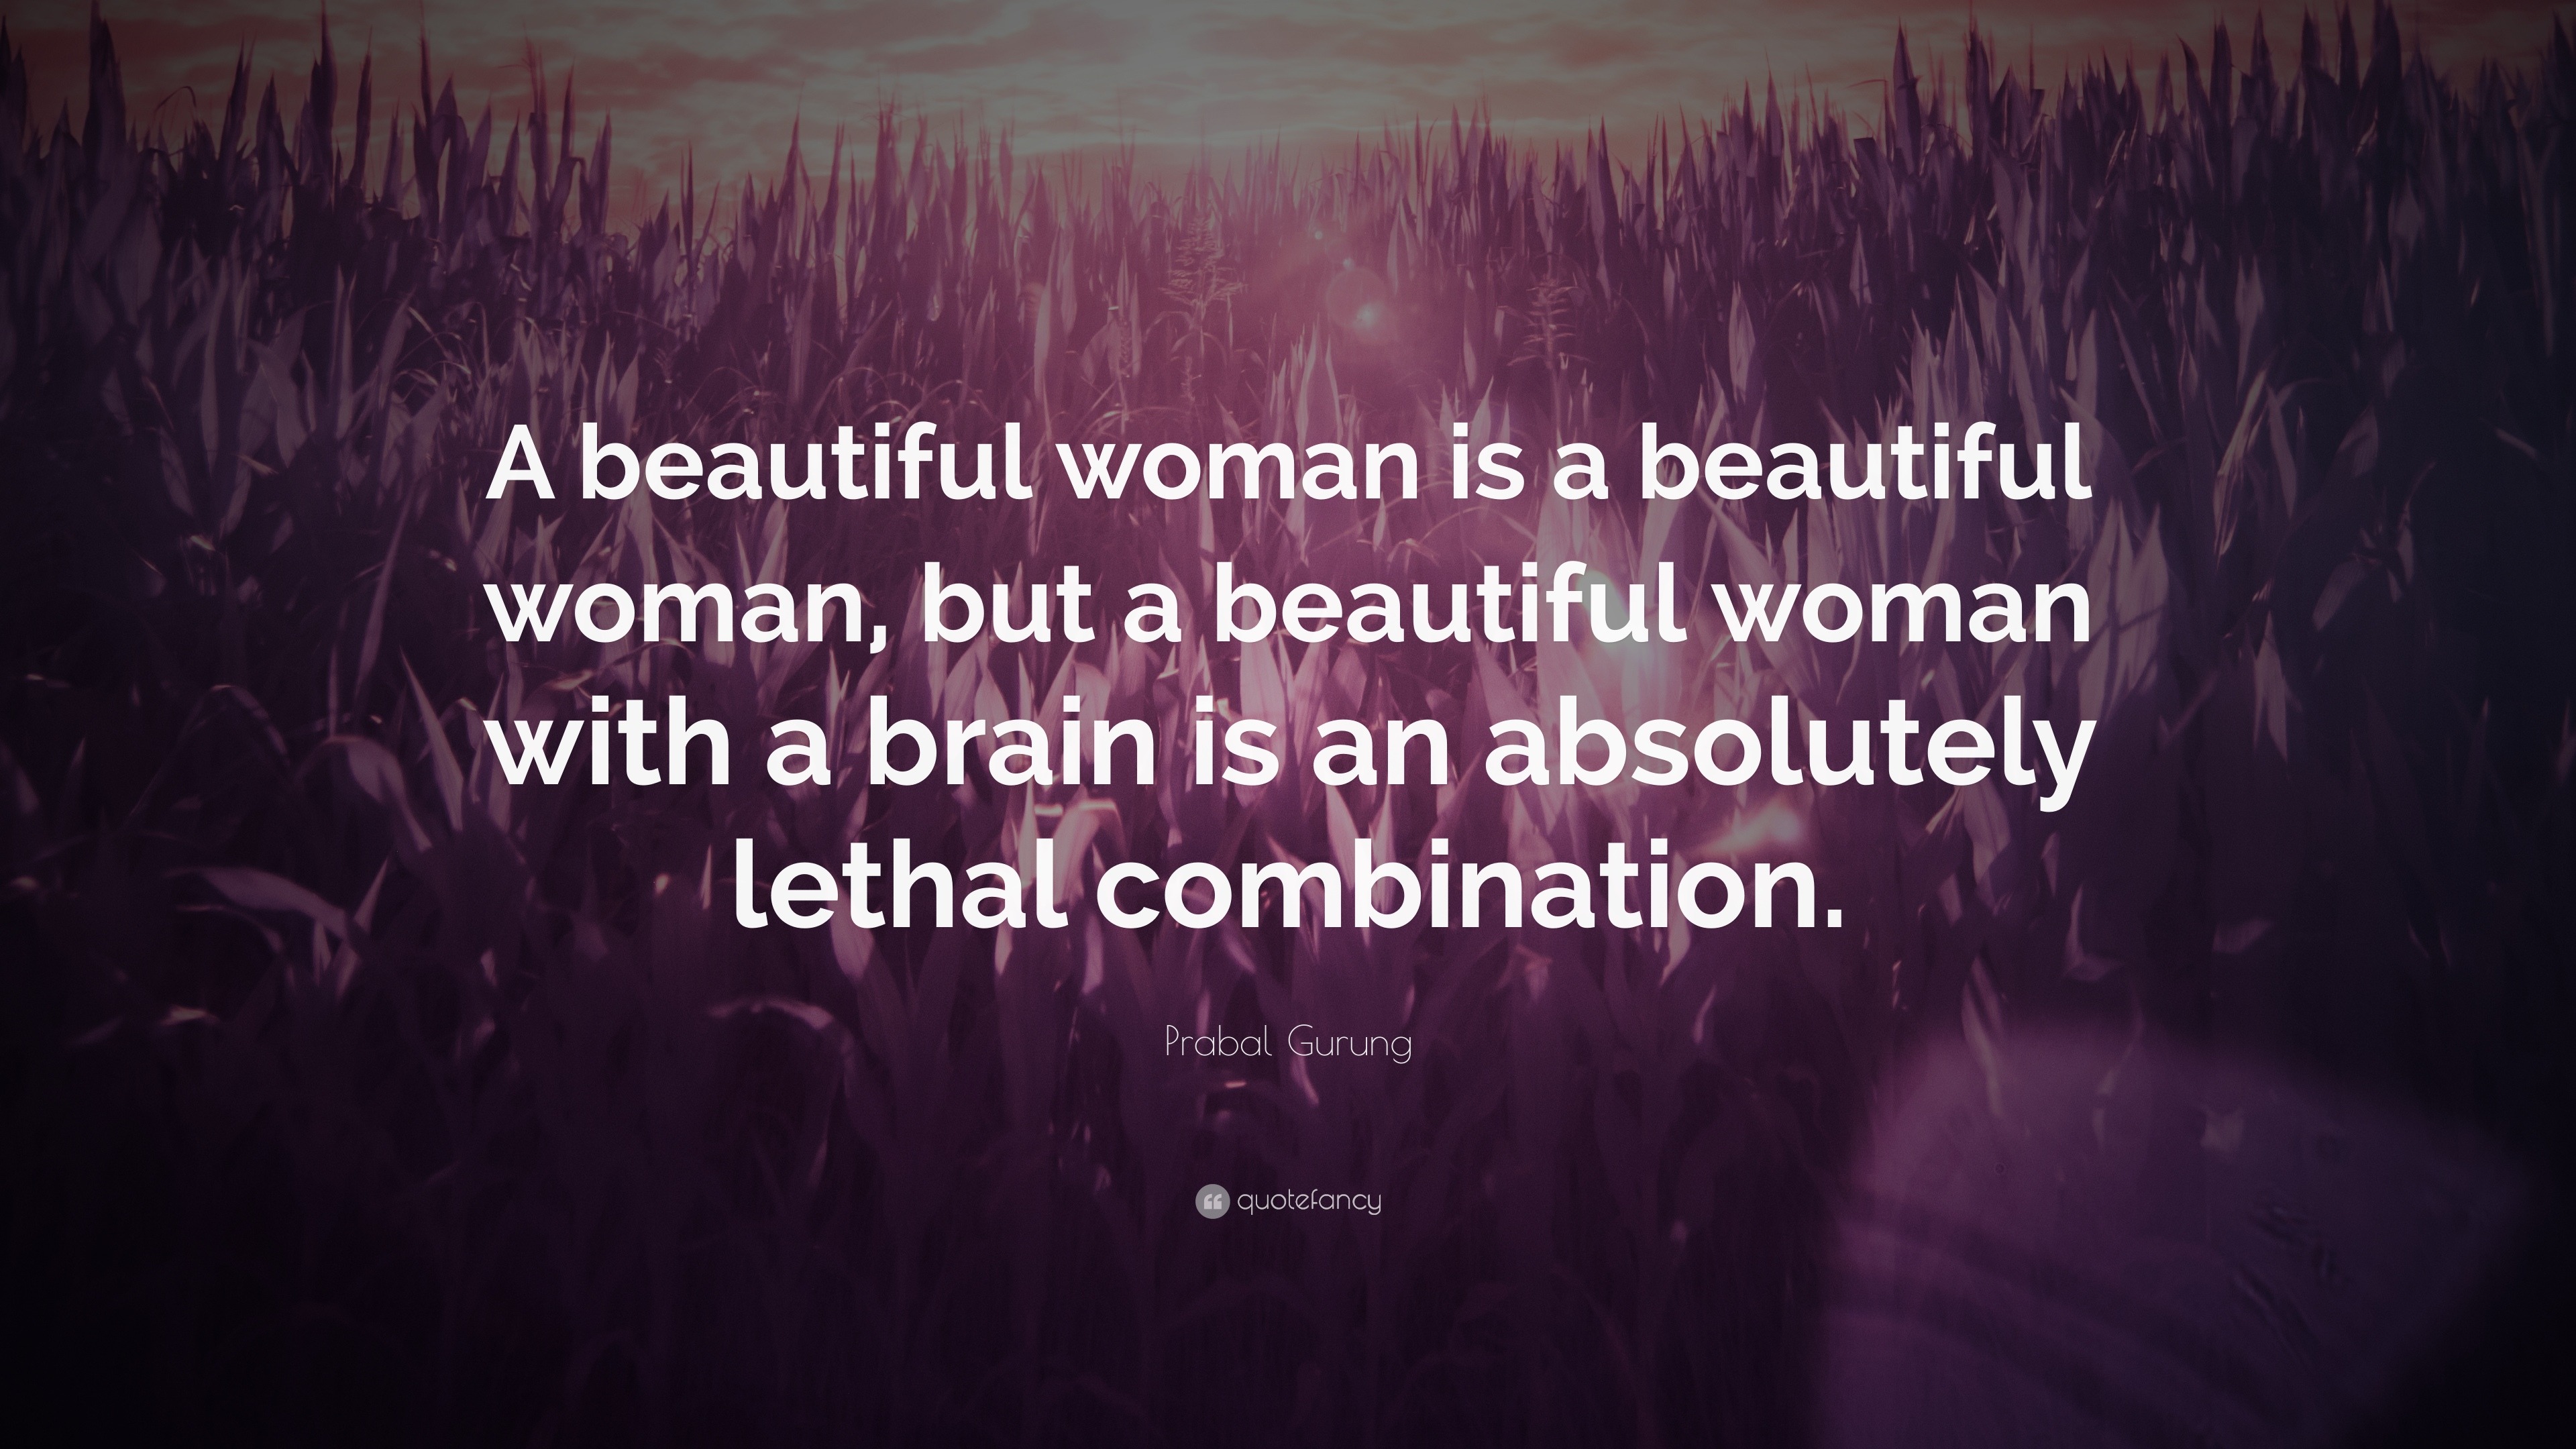 Prabal Gurung Quote “A beautiful woman is a beautiful woman, but ...